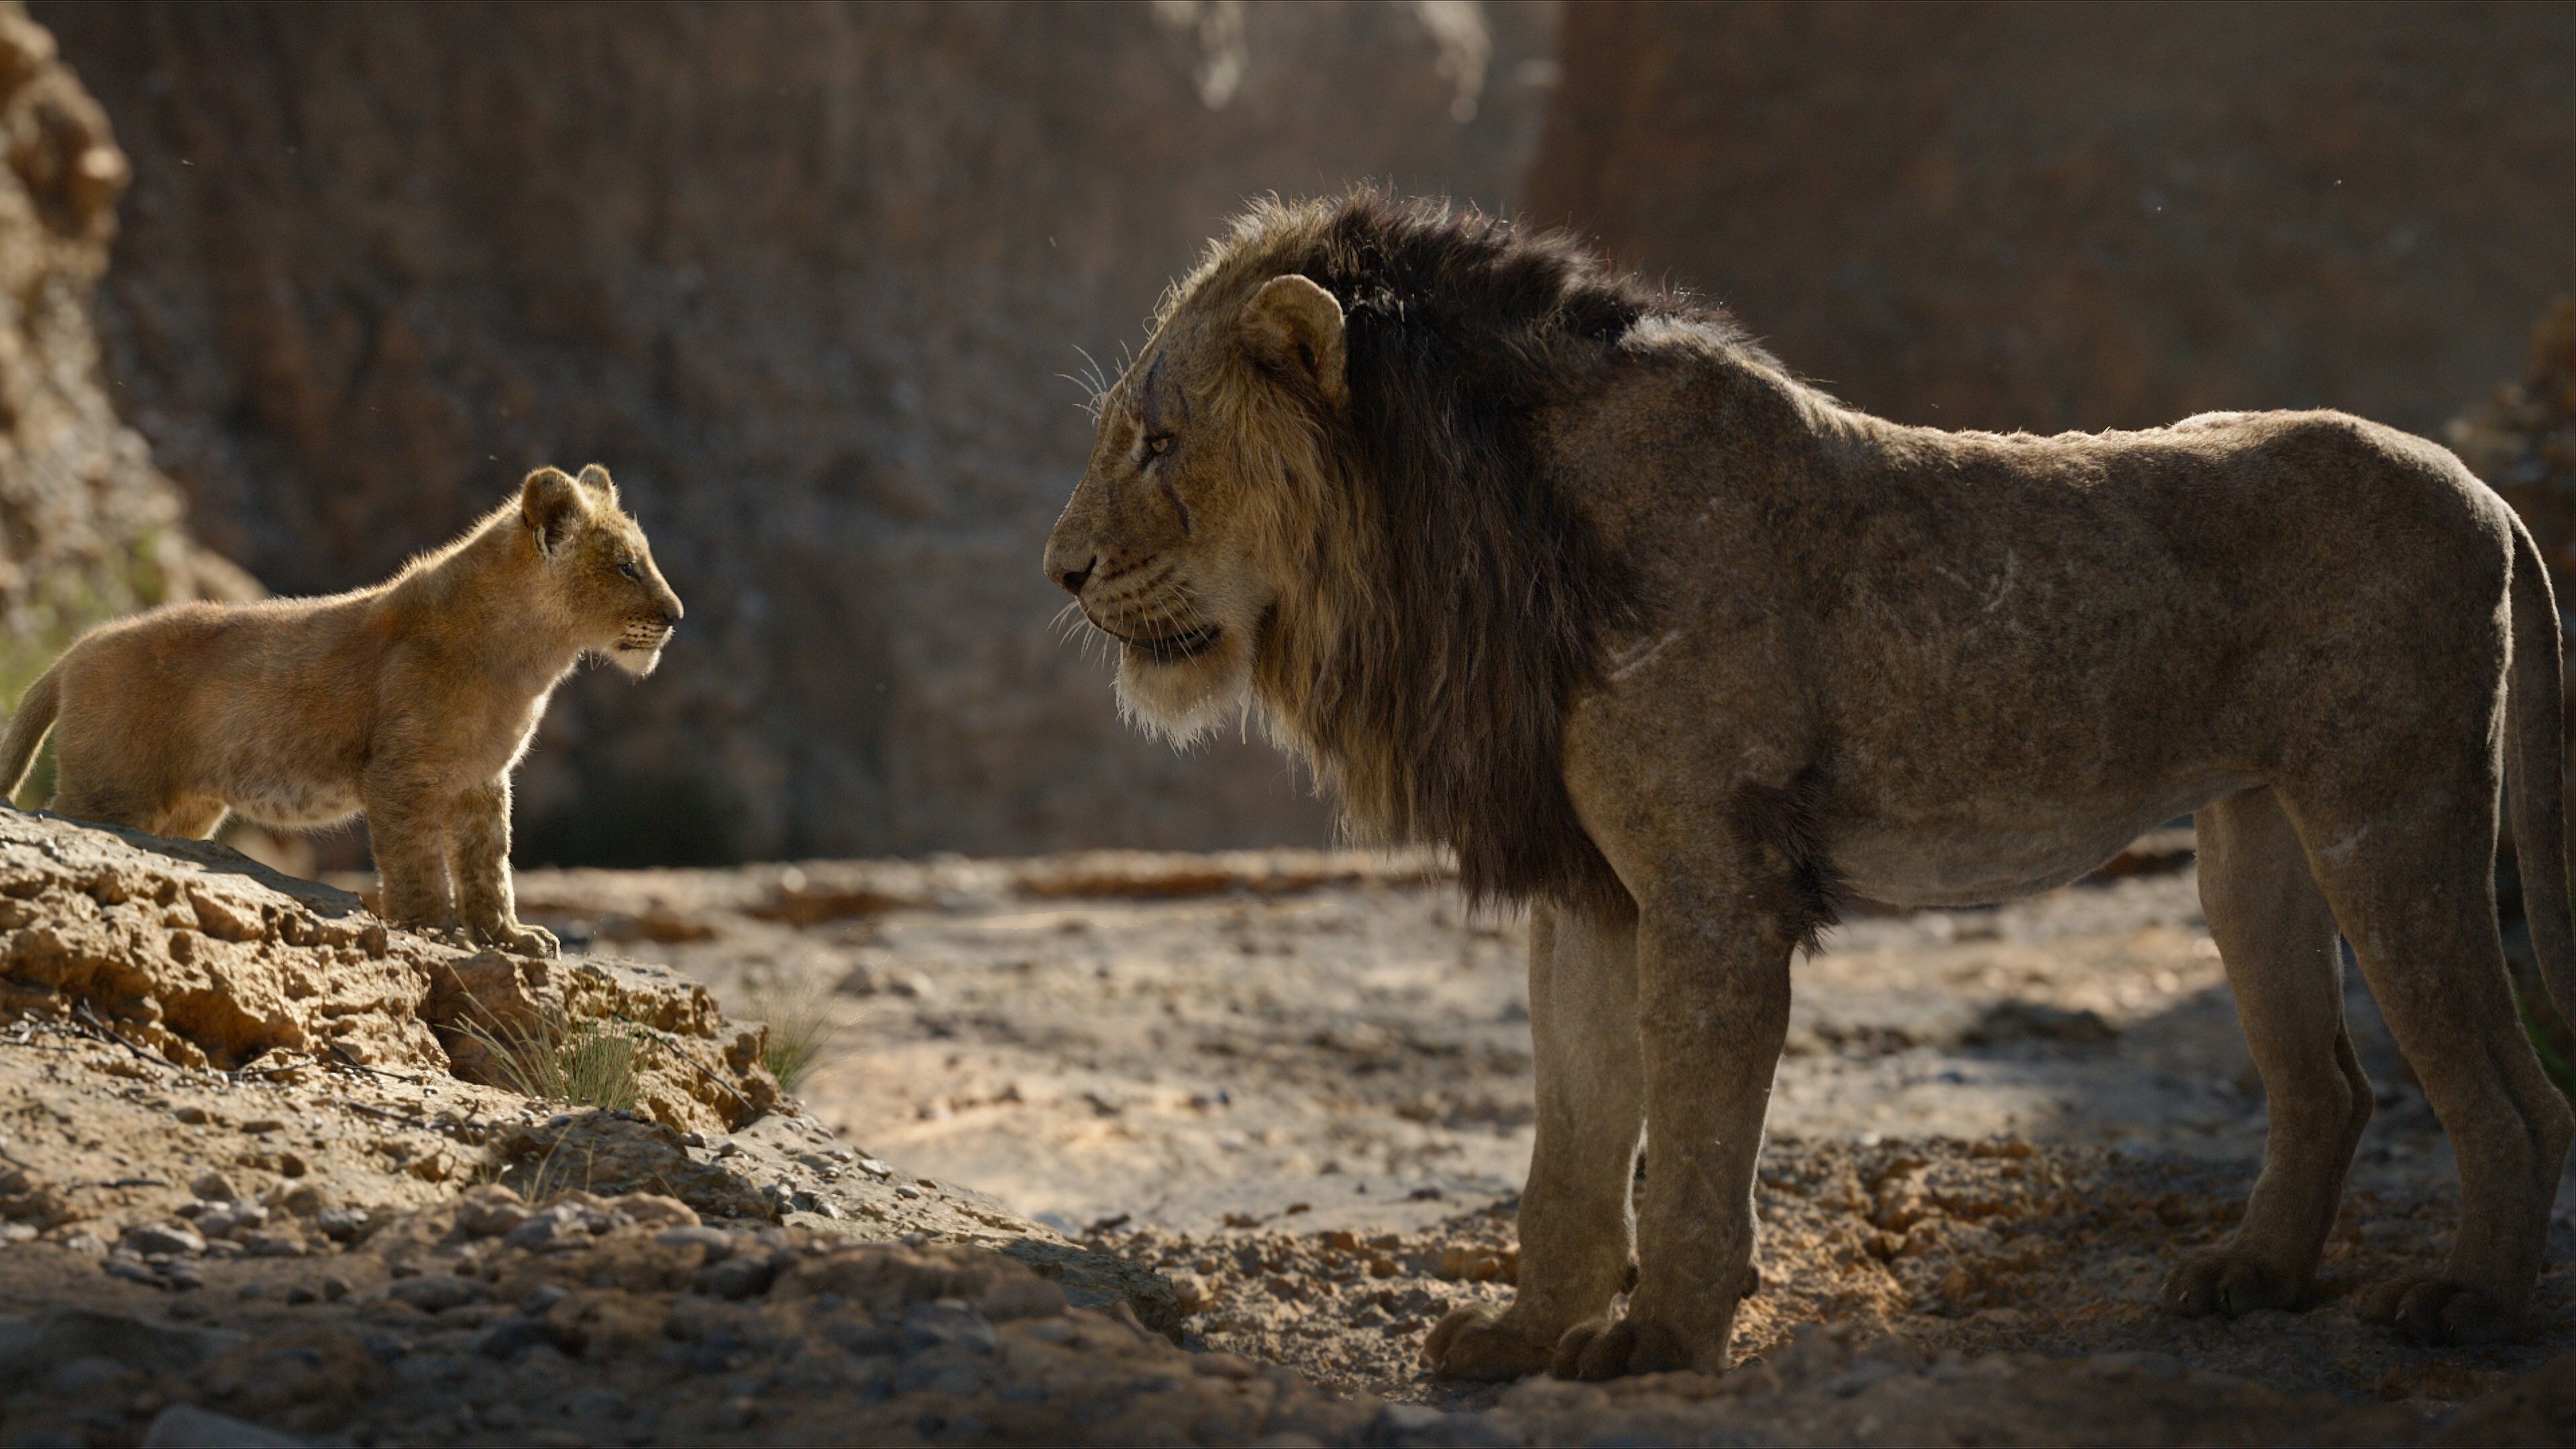 The Lion King Film 4K Wallpaper